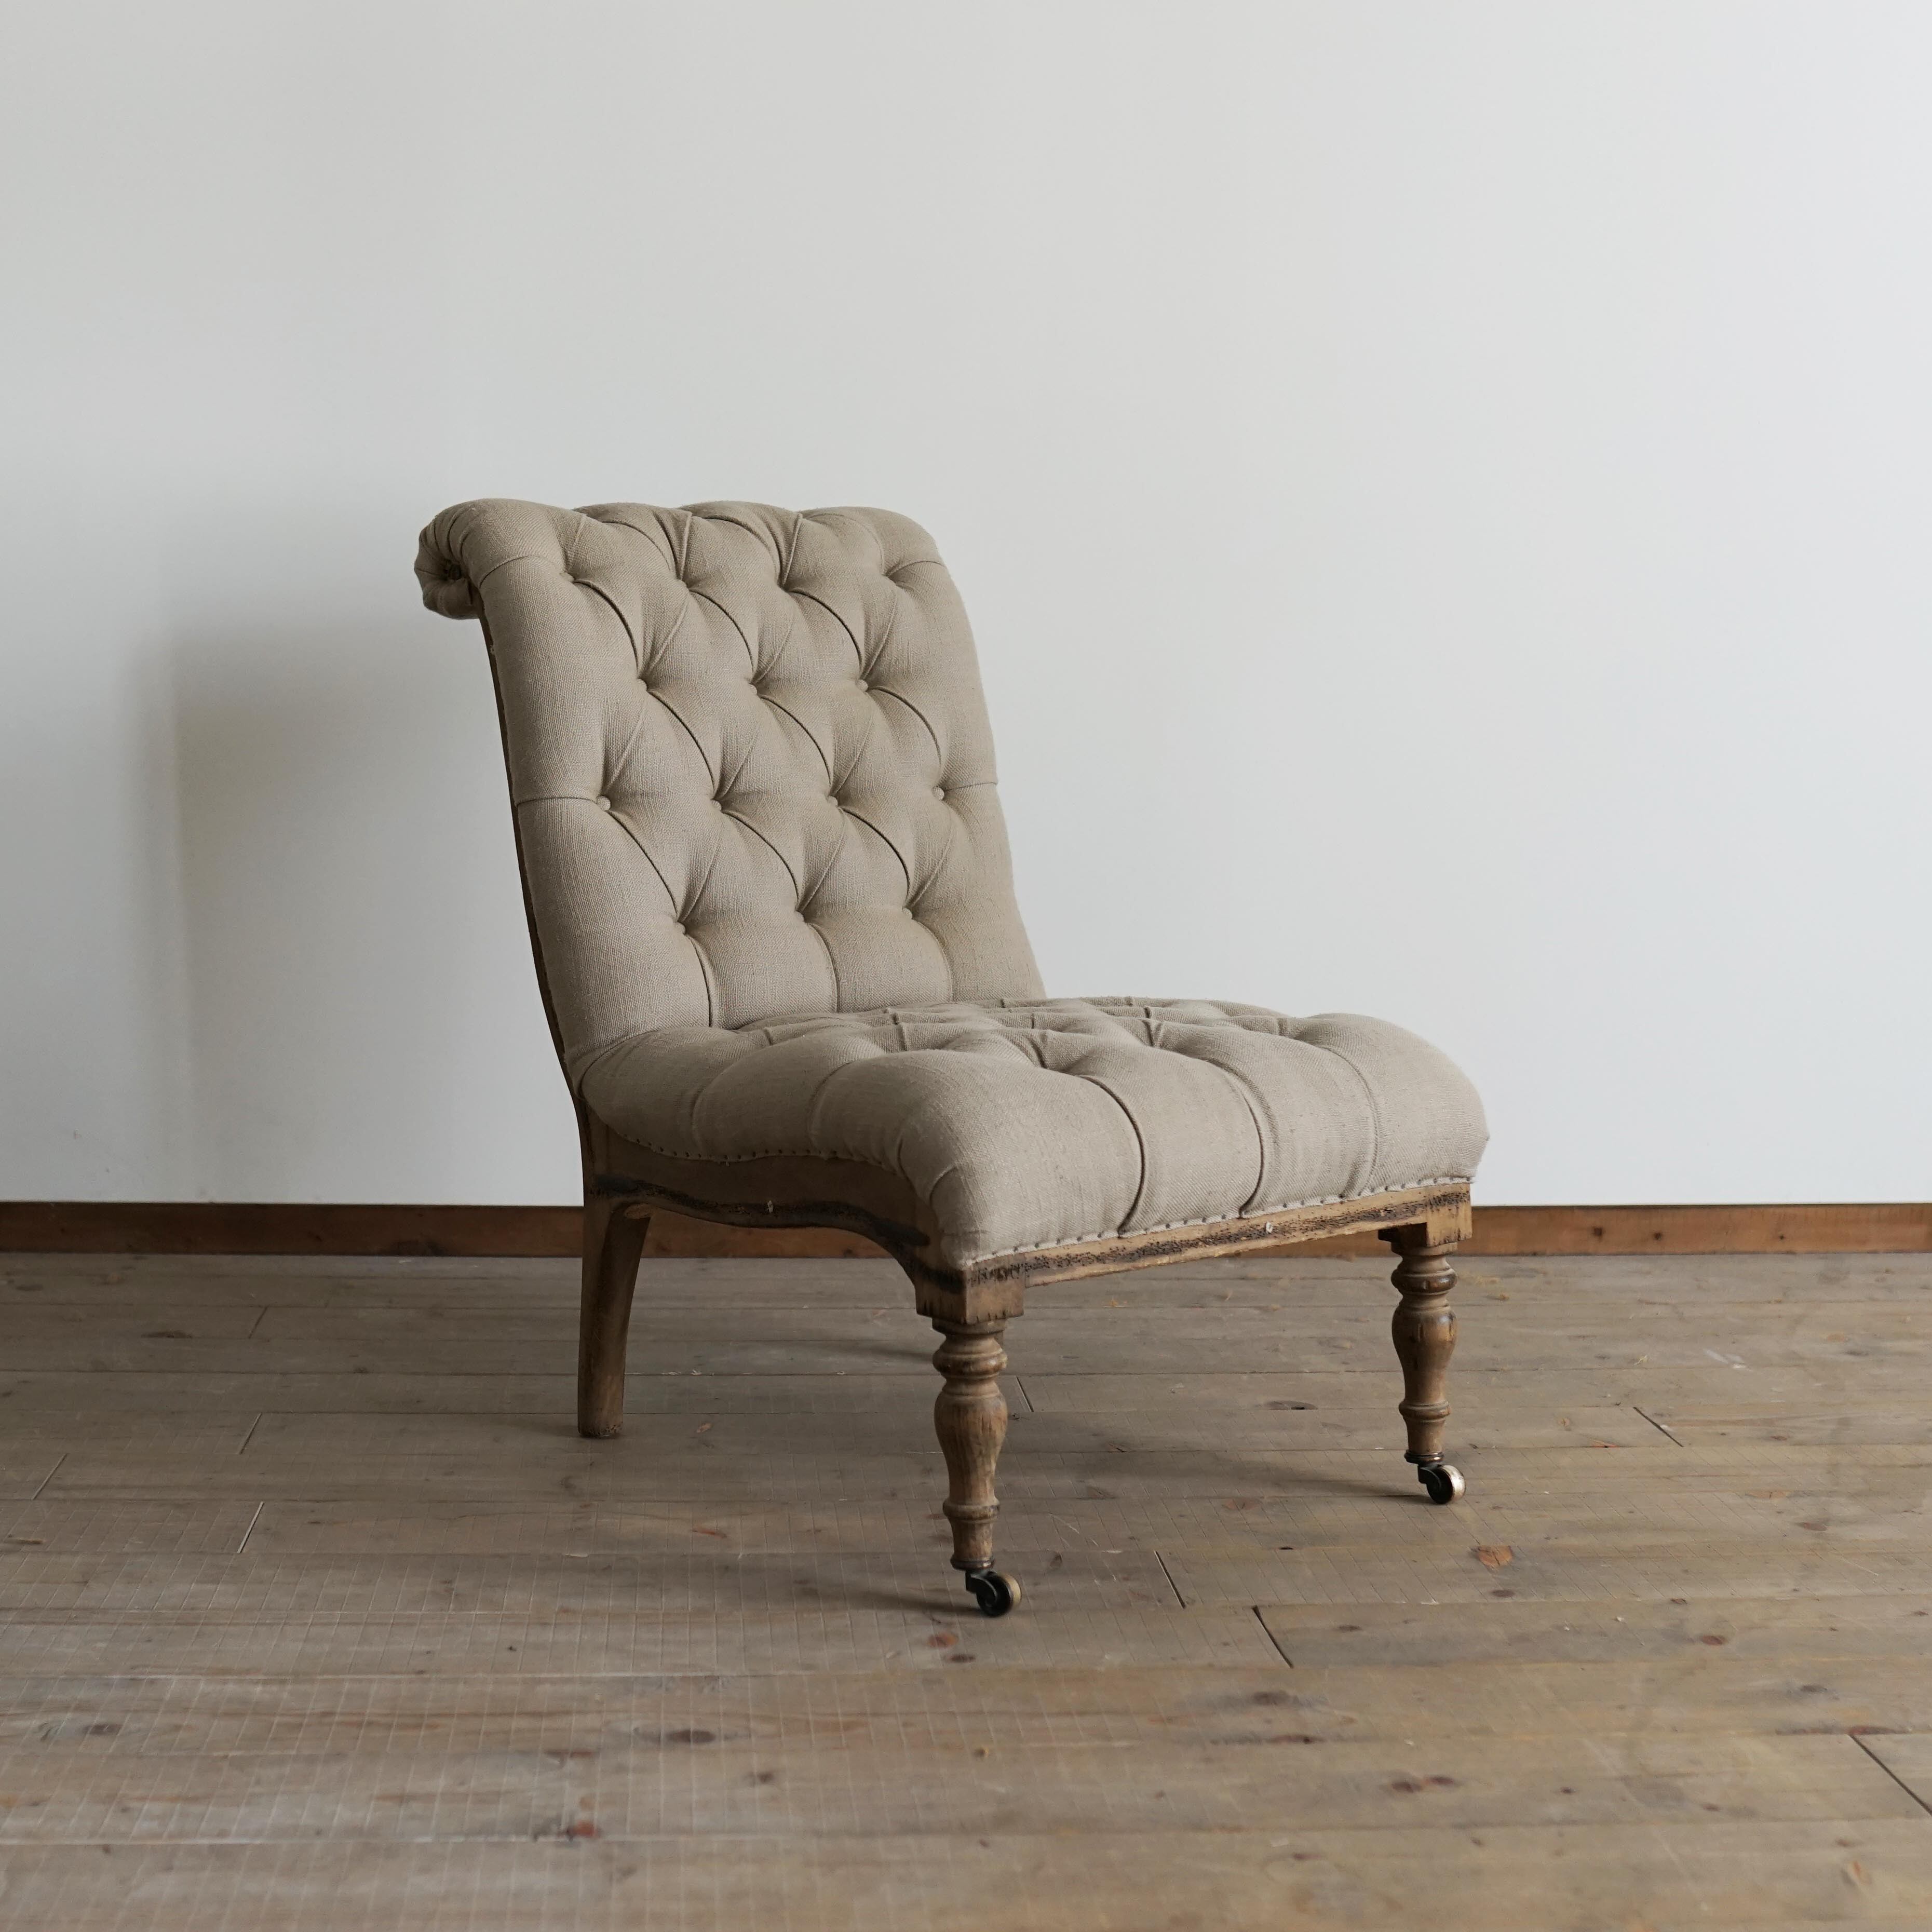 #02-14 Button cushion chair